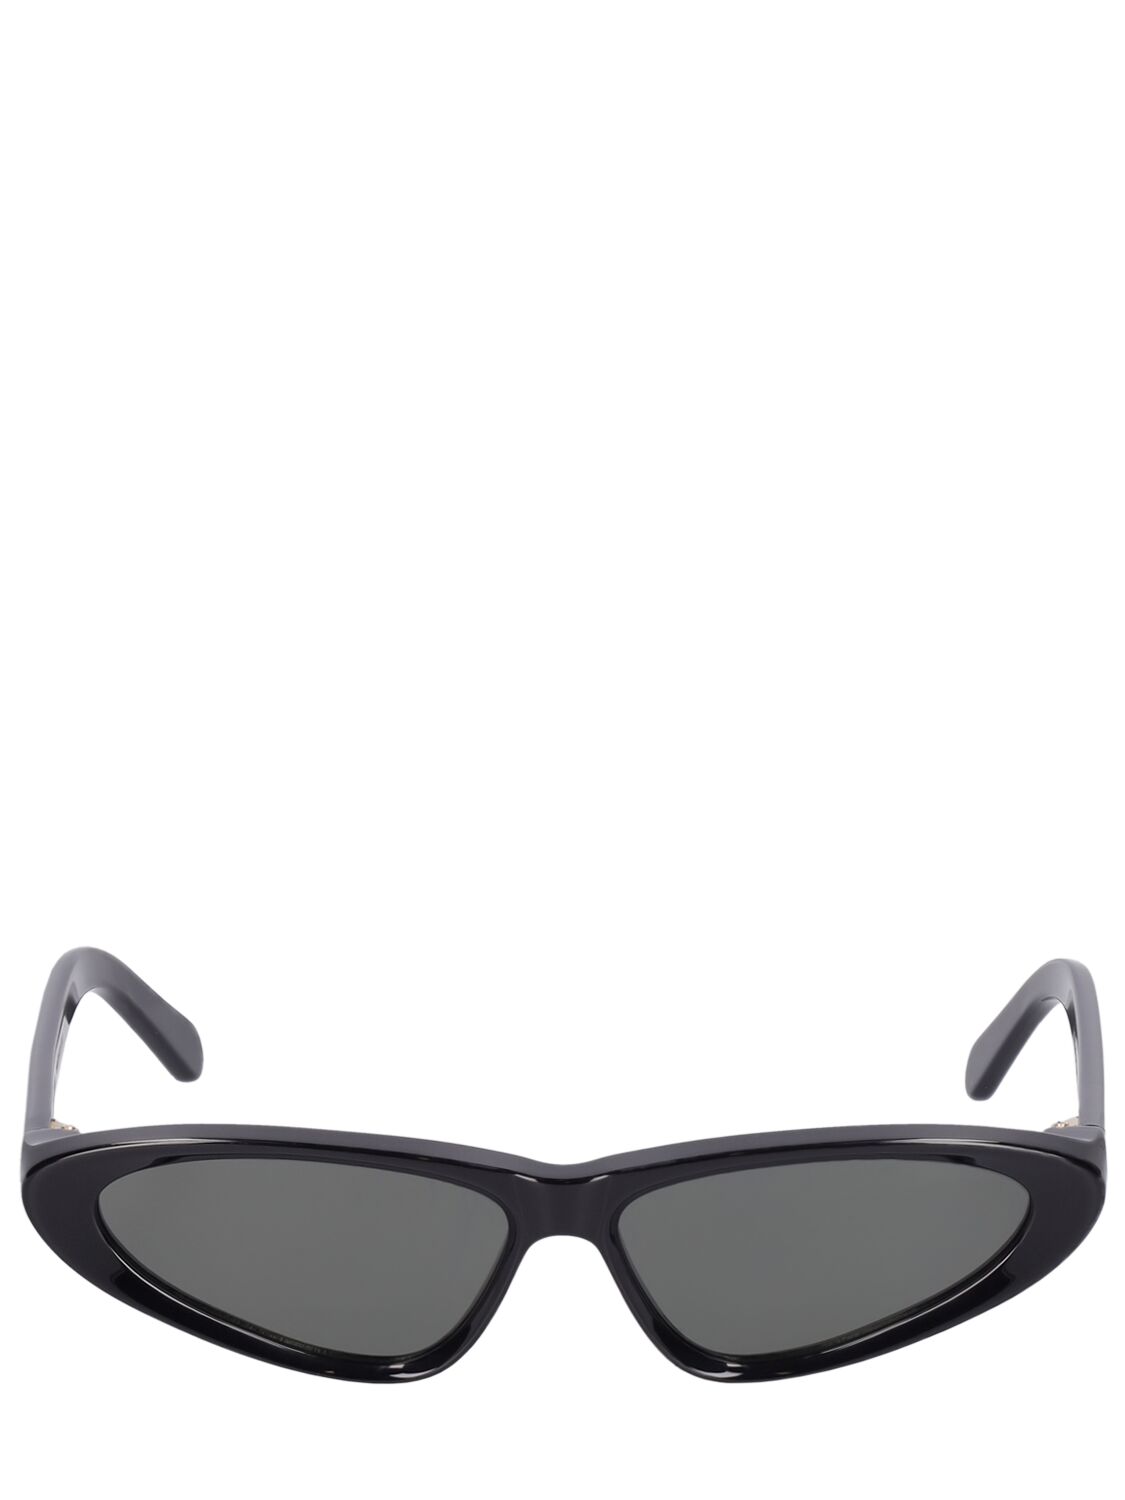 Image of Lumino Micro Cat-eye Acetate Sunglasses